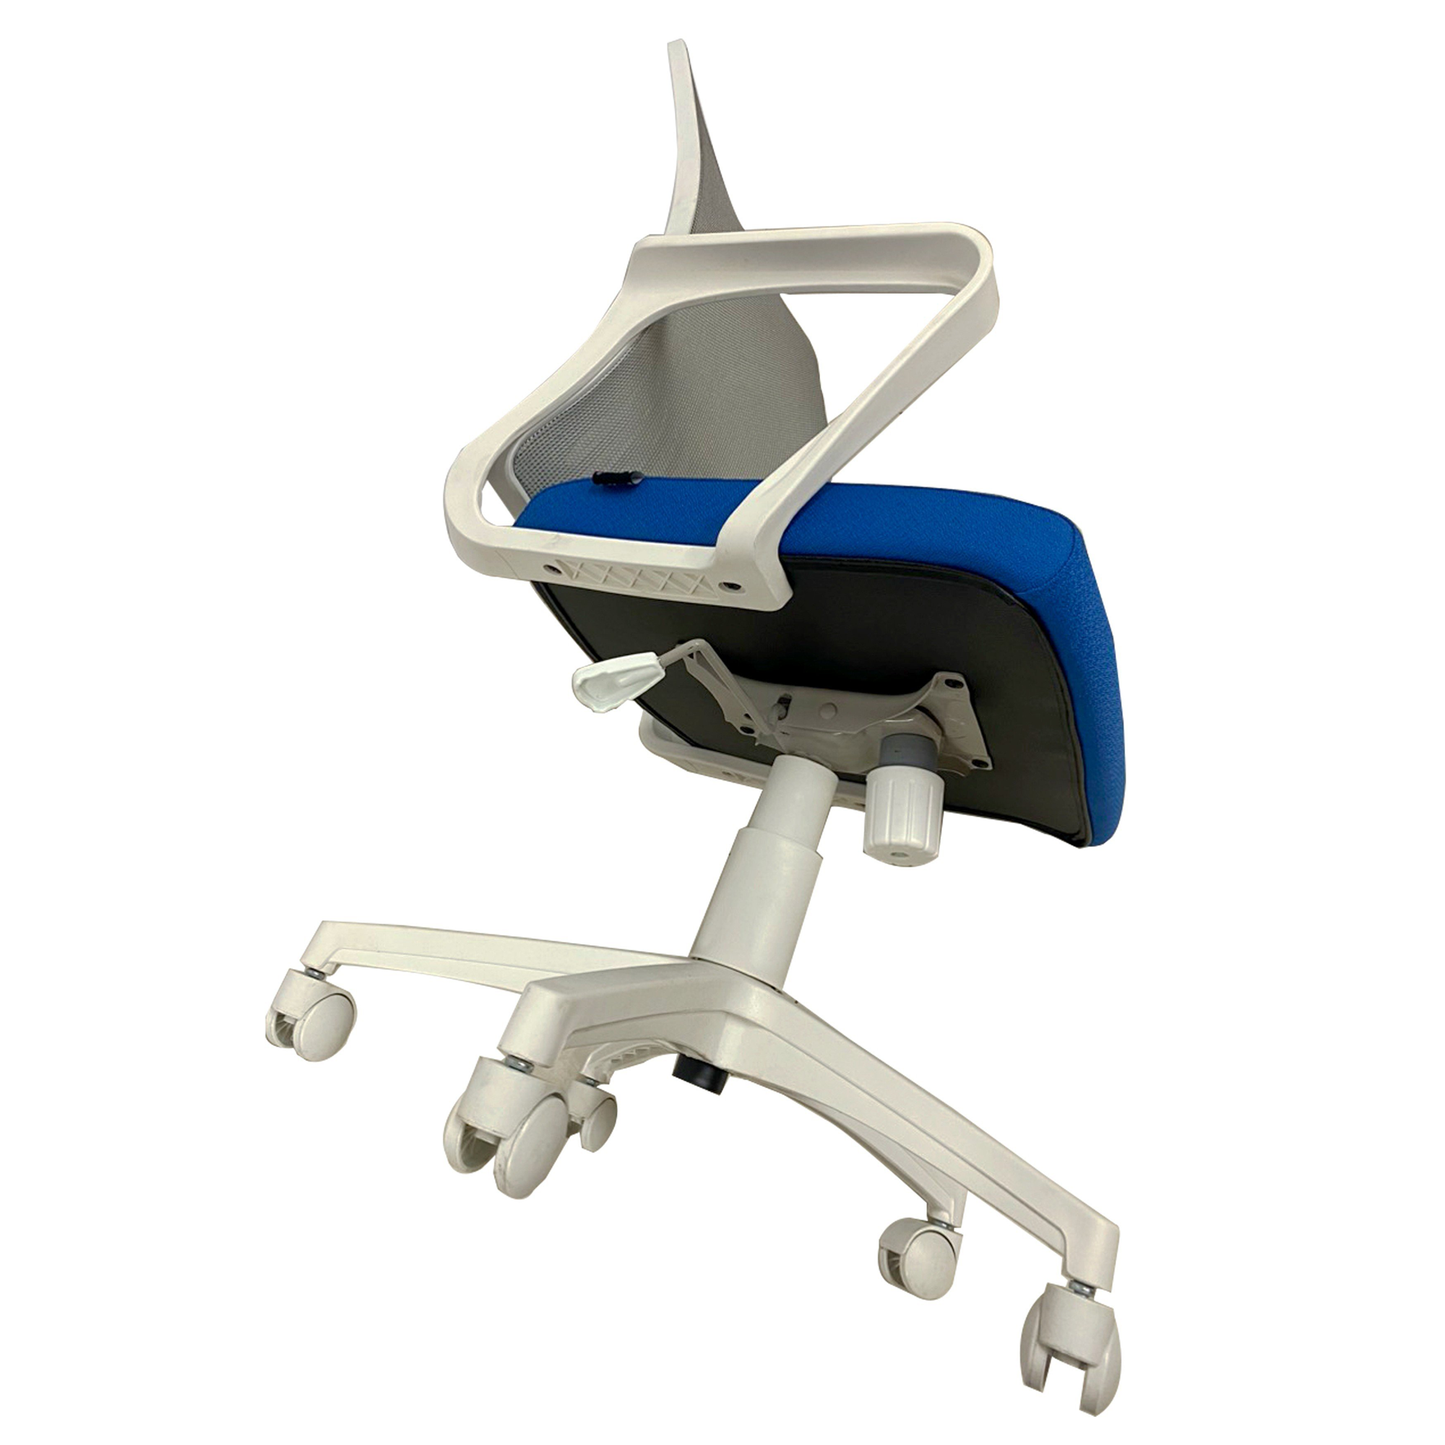 Premium Swivel Office Mesh Chair HIFUWA-X2 (Dark Blue)